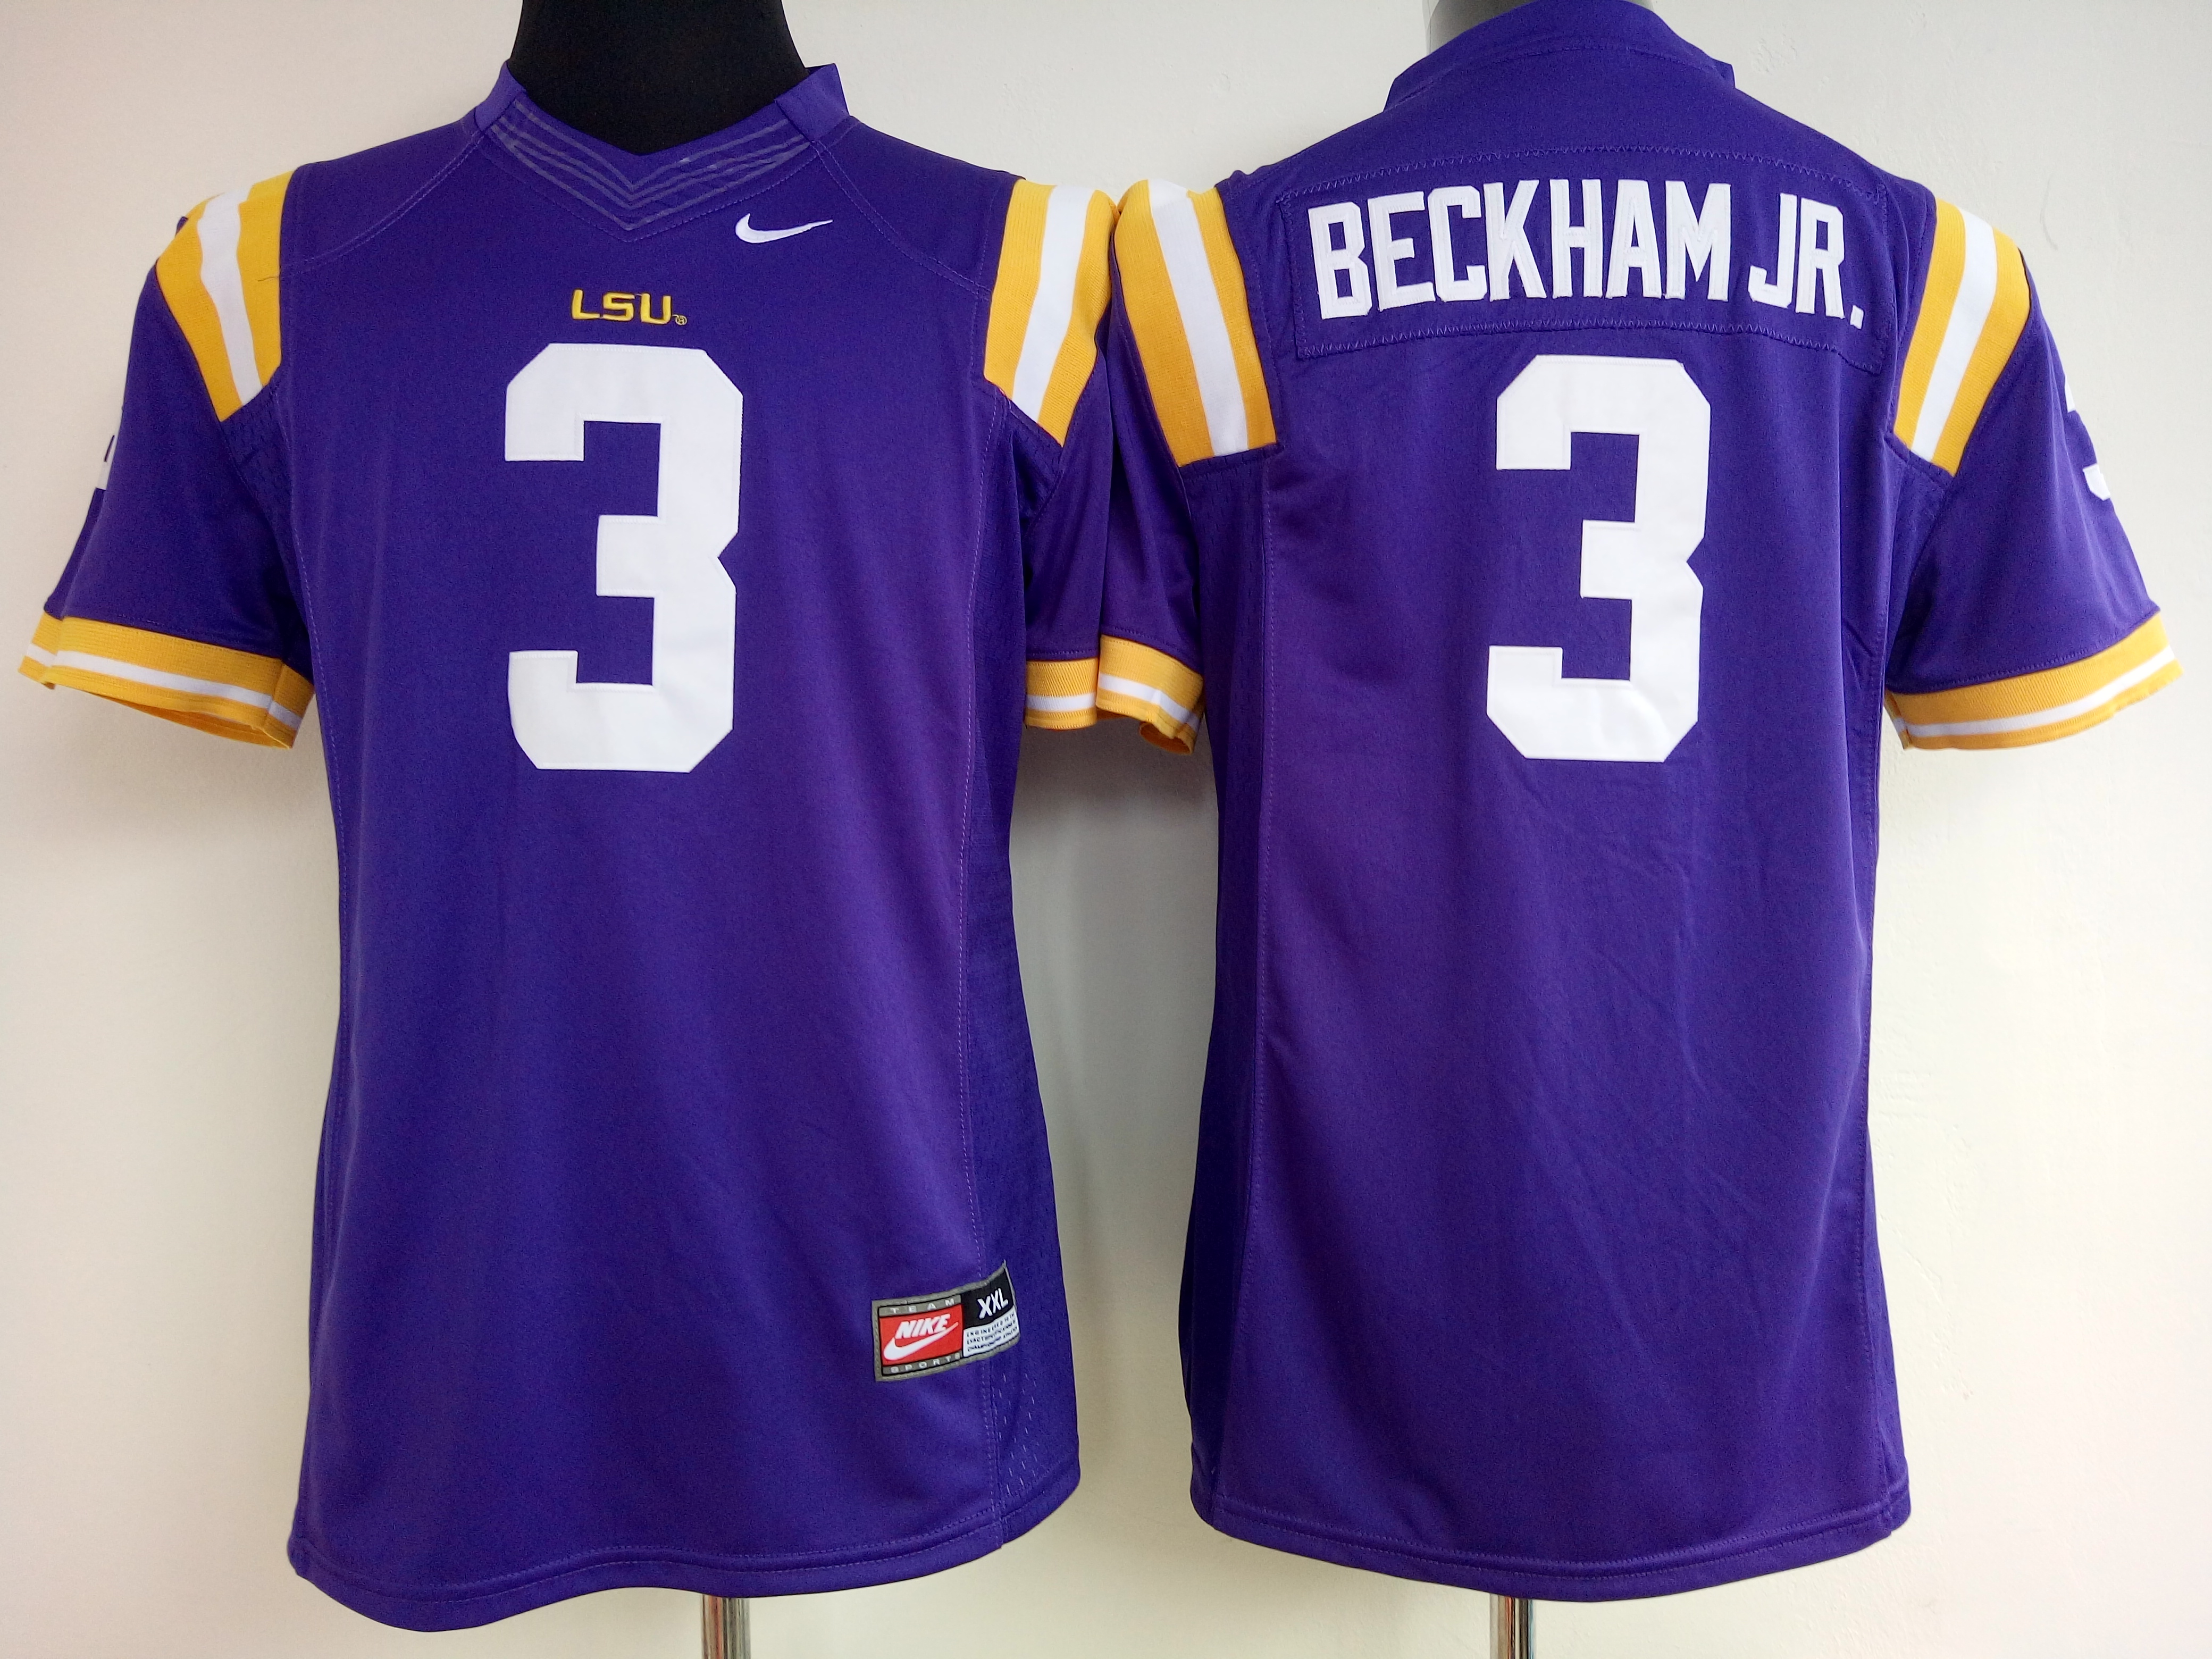 NCAA Womens LSU Tigers Purple #3 Beckham Jr jerseys